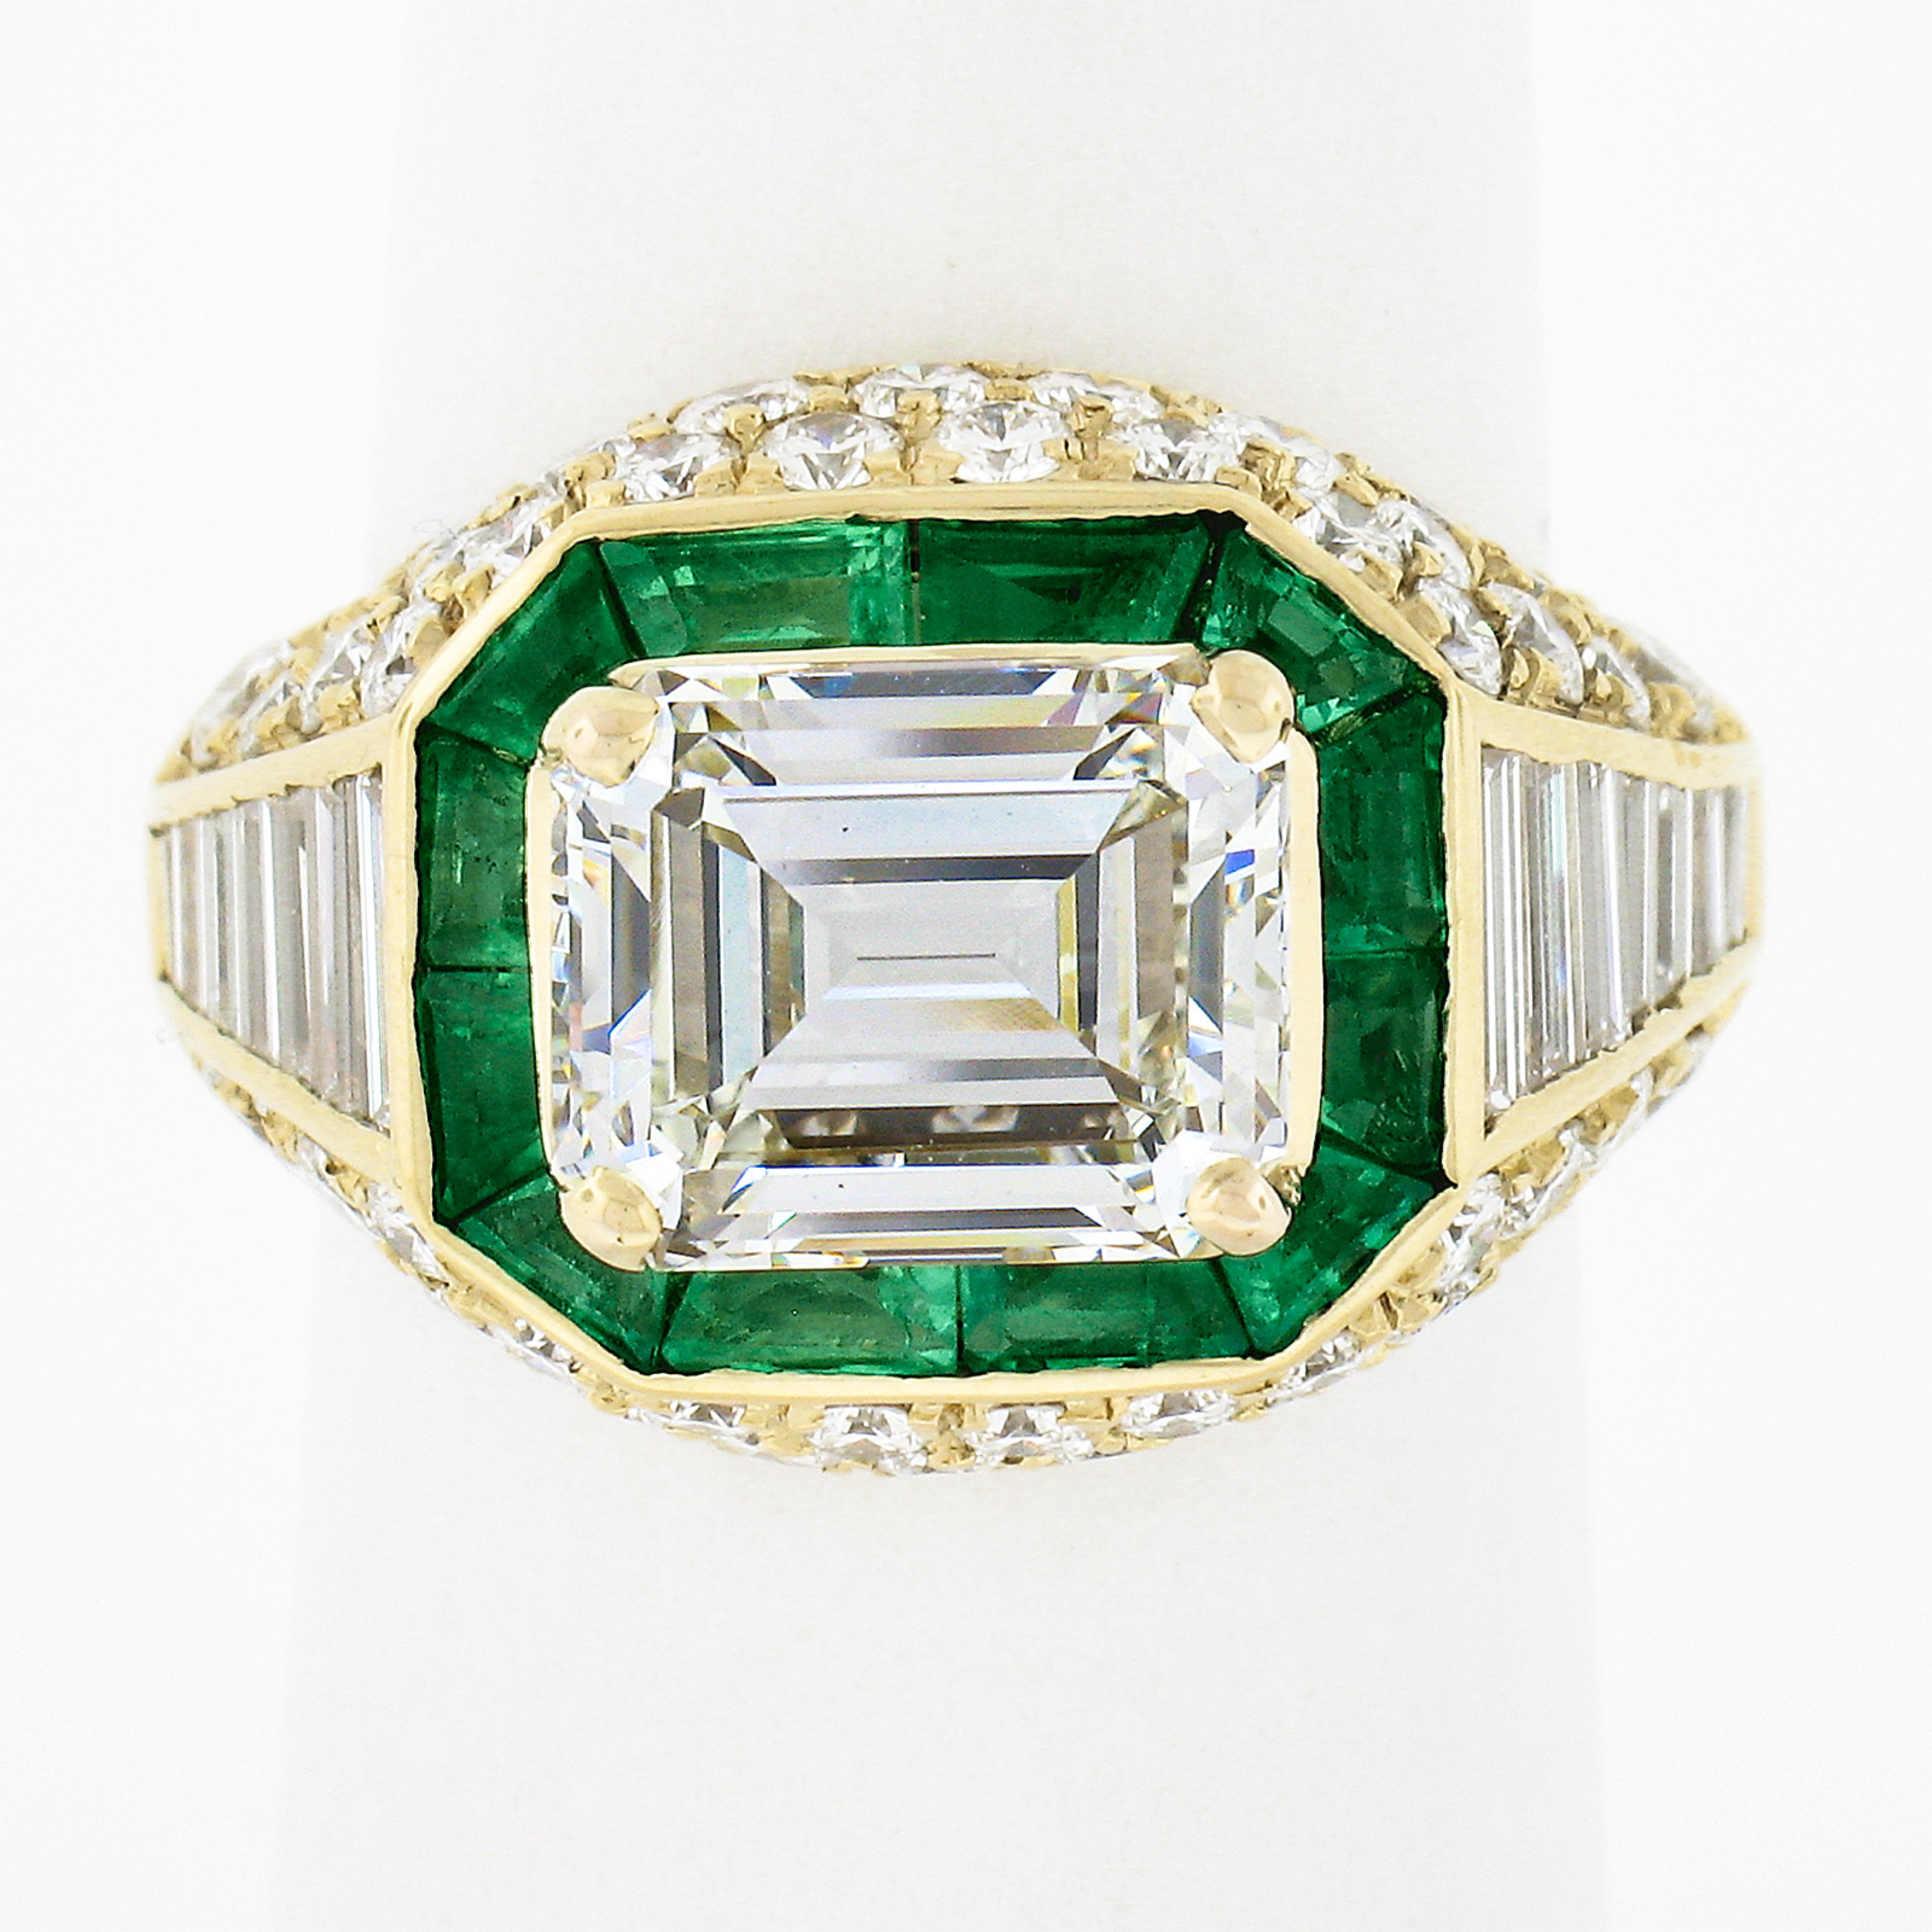 Cette magnifique bague de fiançailles en diamant de fantaisie est réalisée en or jaune 18 carats et comporte un grand diamant central de 3,03 carats certifié par le GIA. Il est absolument spectaculaire et présente une quantité magnifique d'éclat,